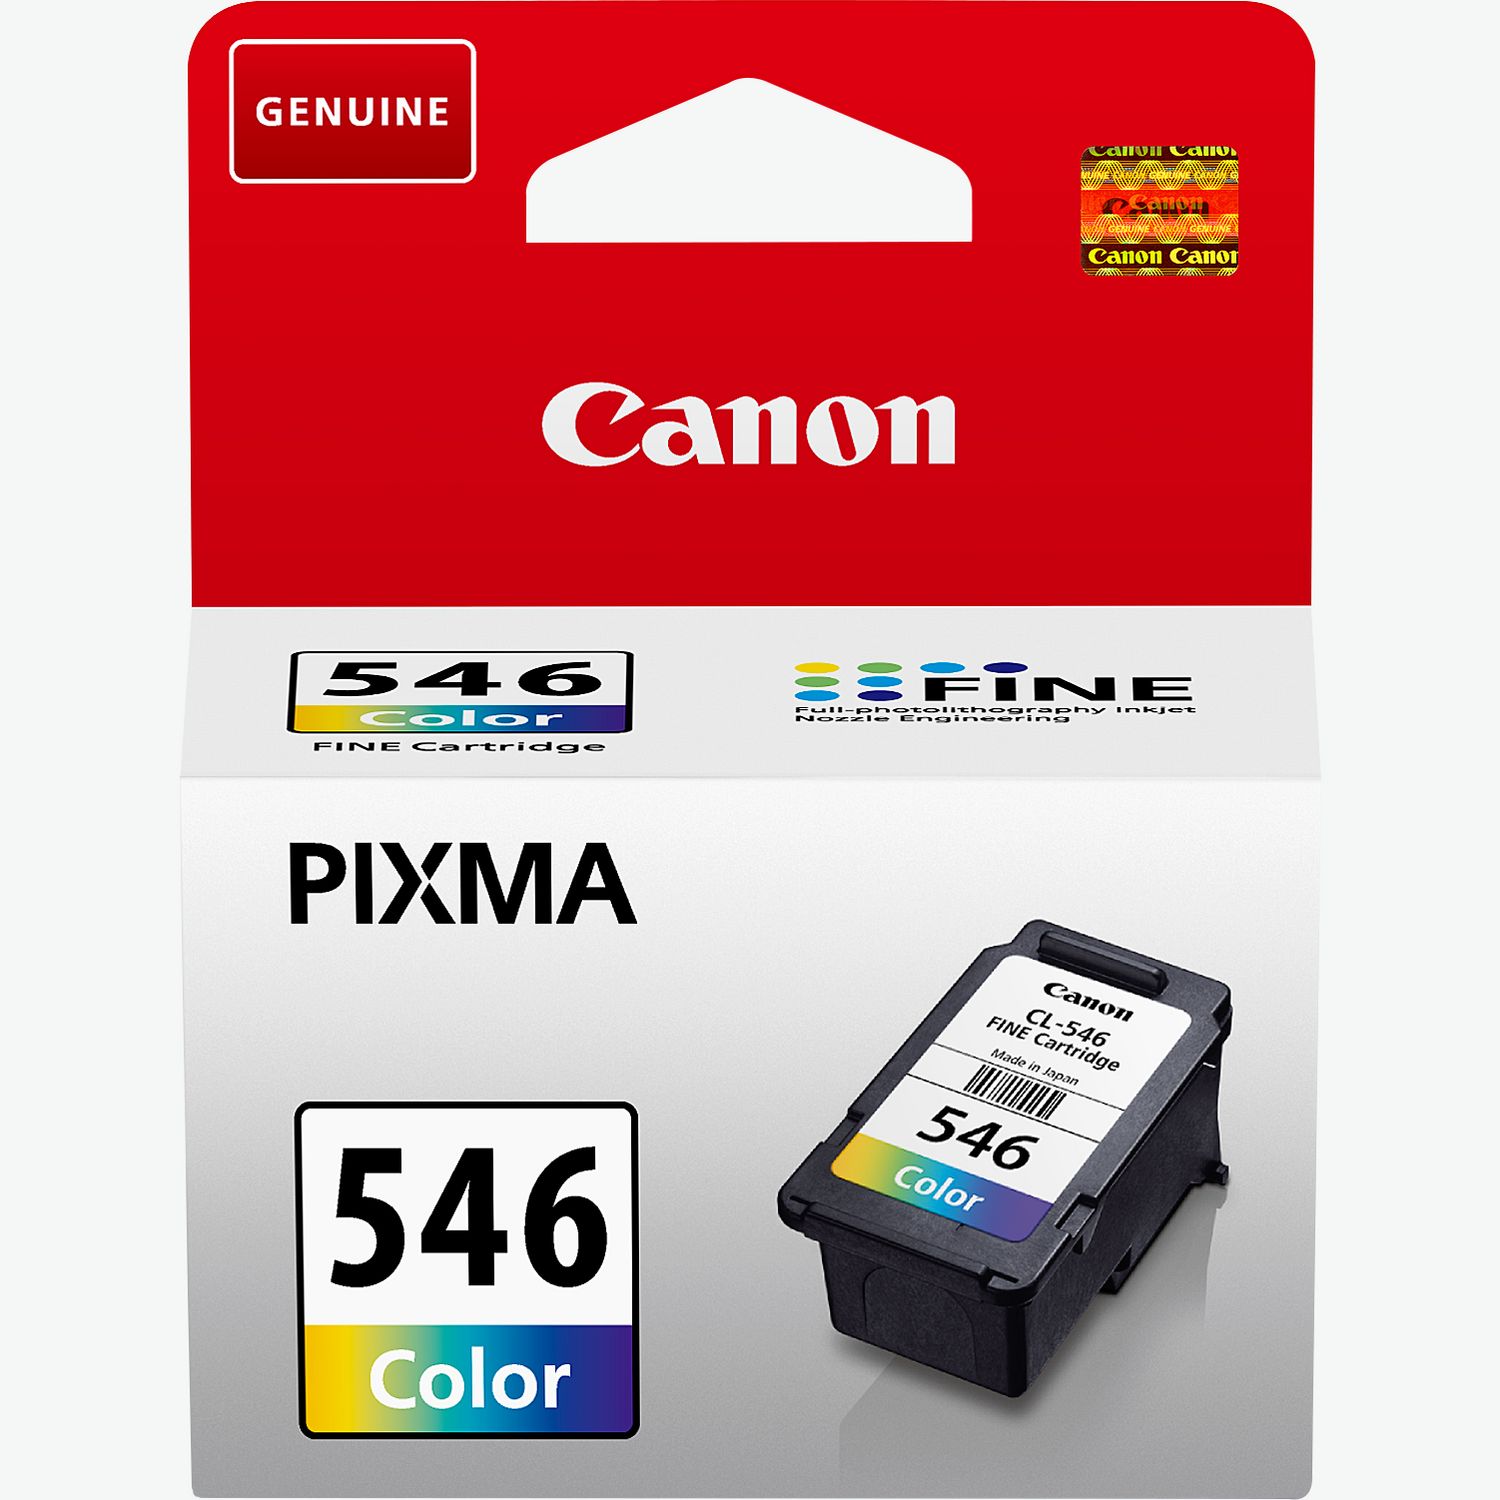 Canon PIXMA TS3450 Noir - Imprimante jet d'encre Canon sur